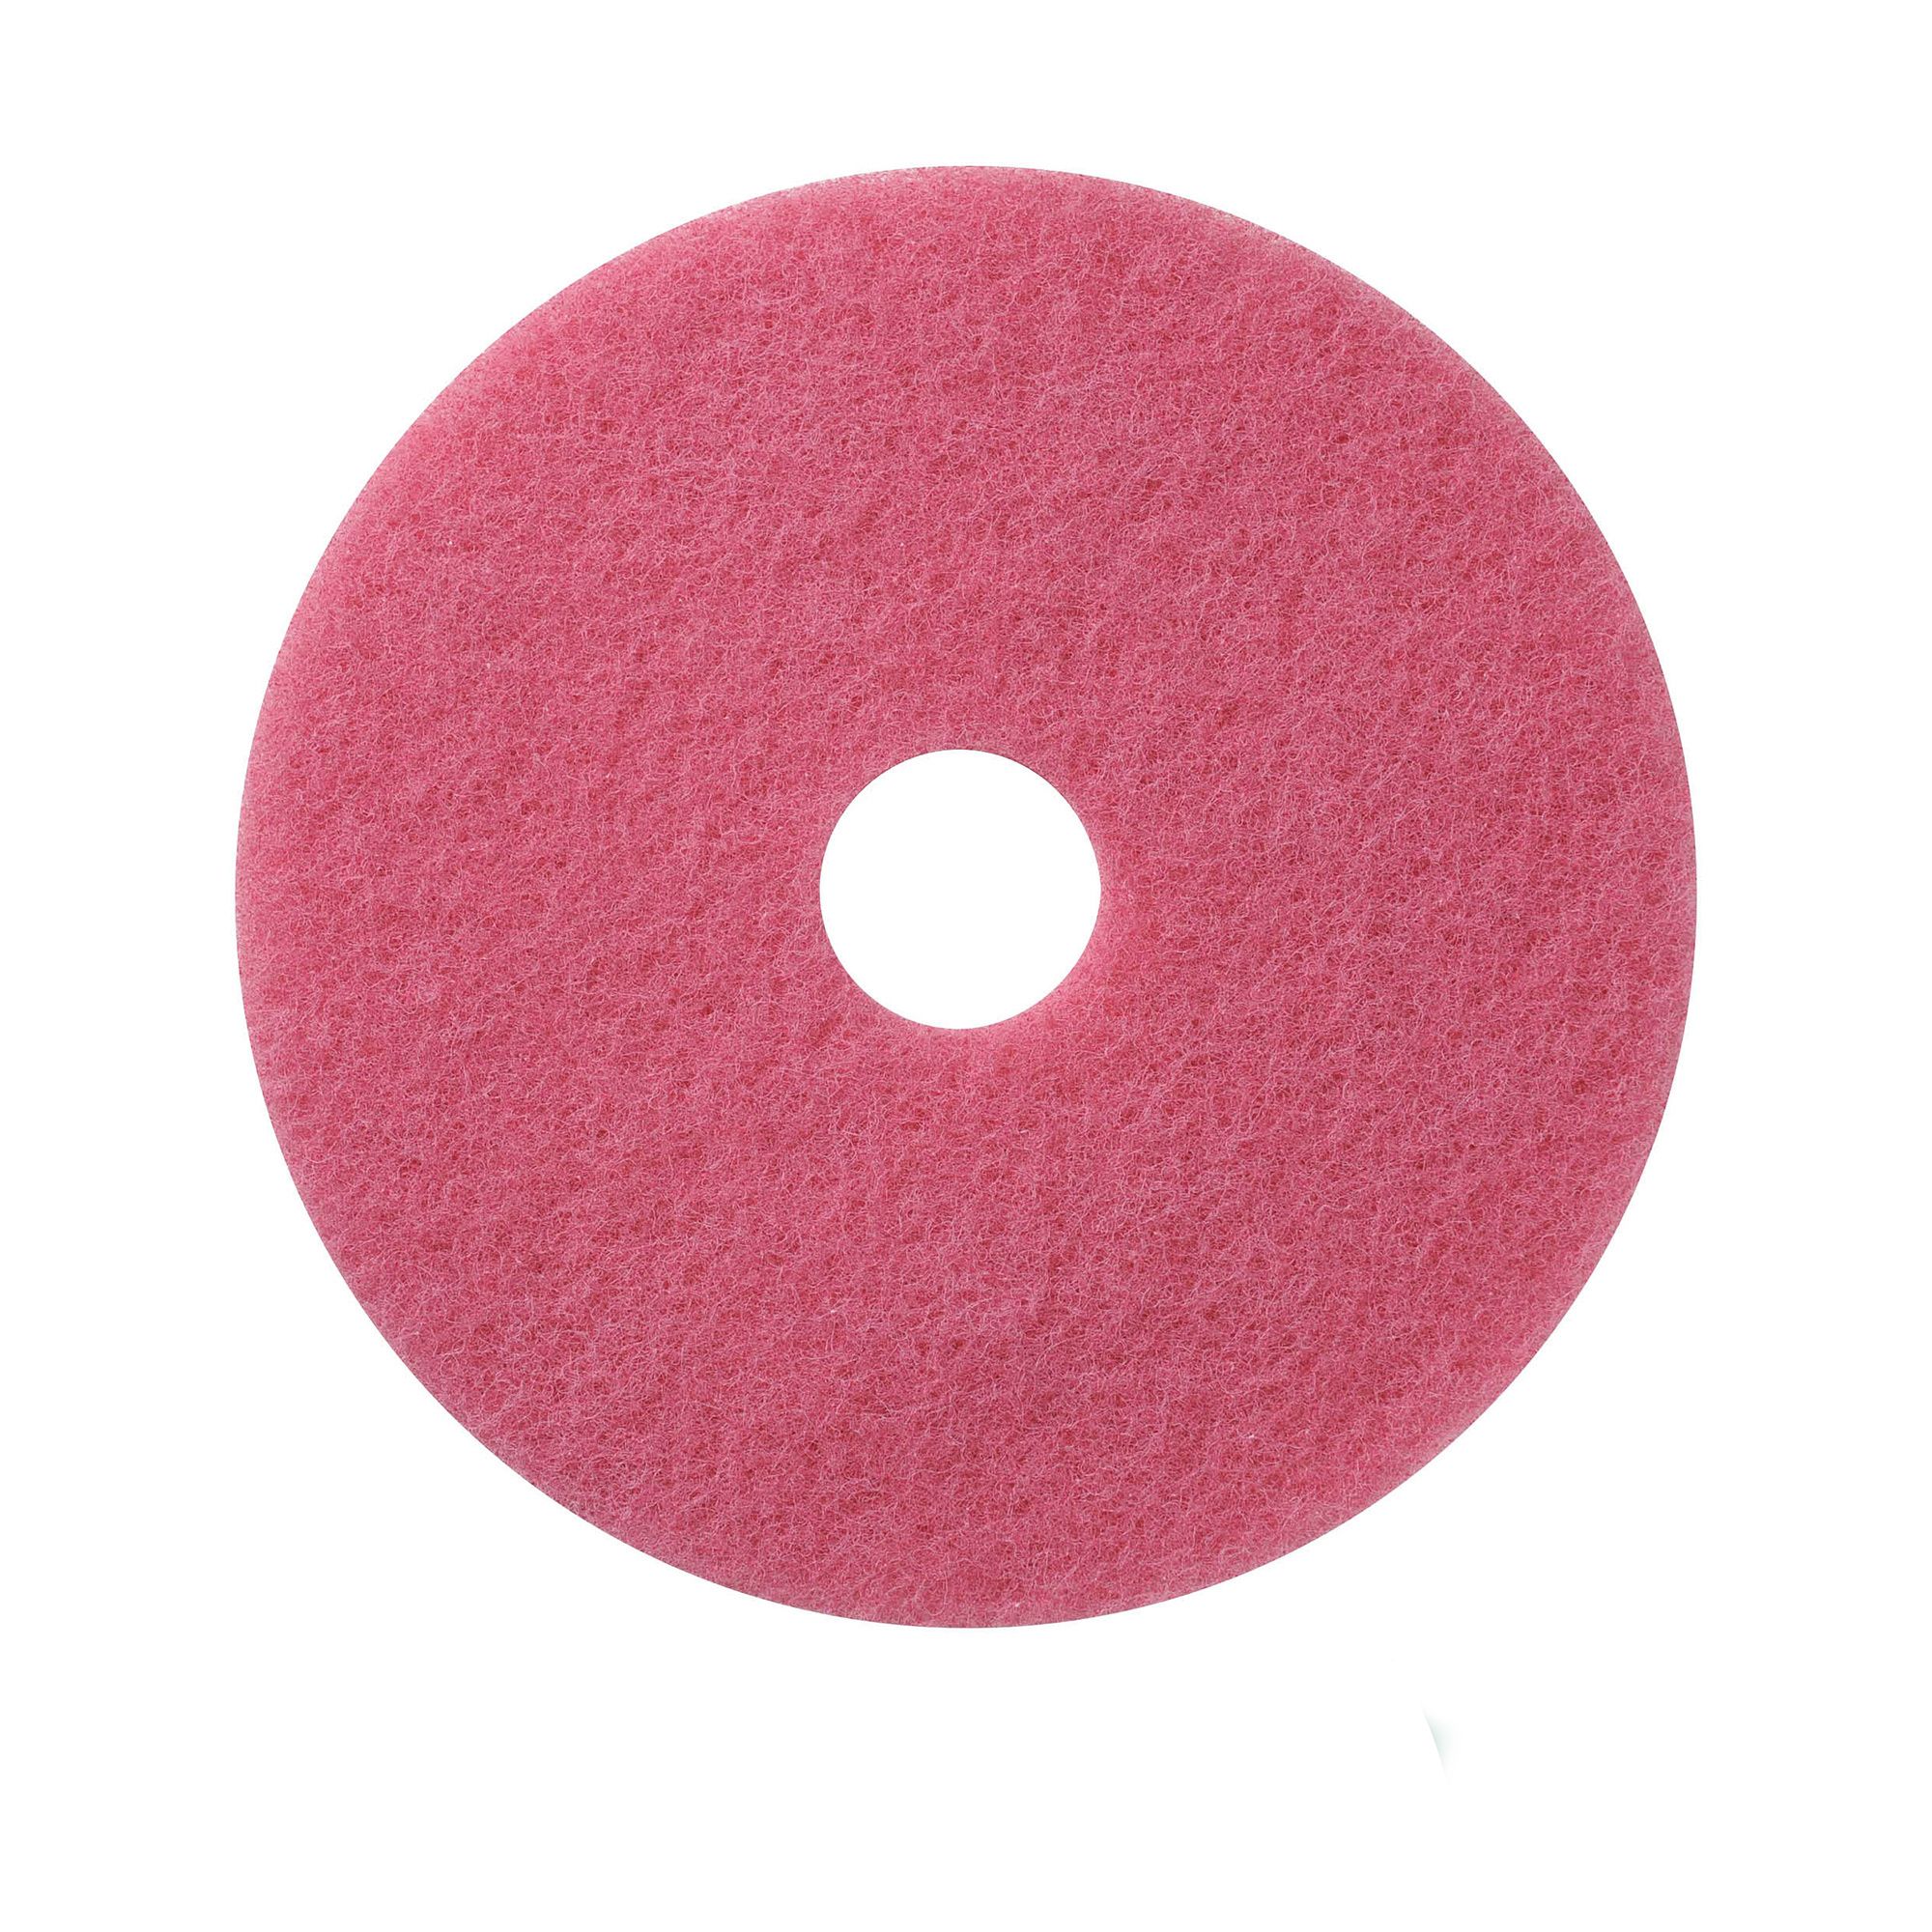 NuPad roze (schrobben), per 5 stuks, 13 inch / 330 mm